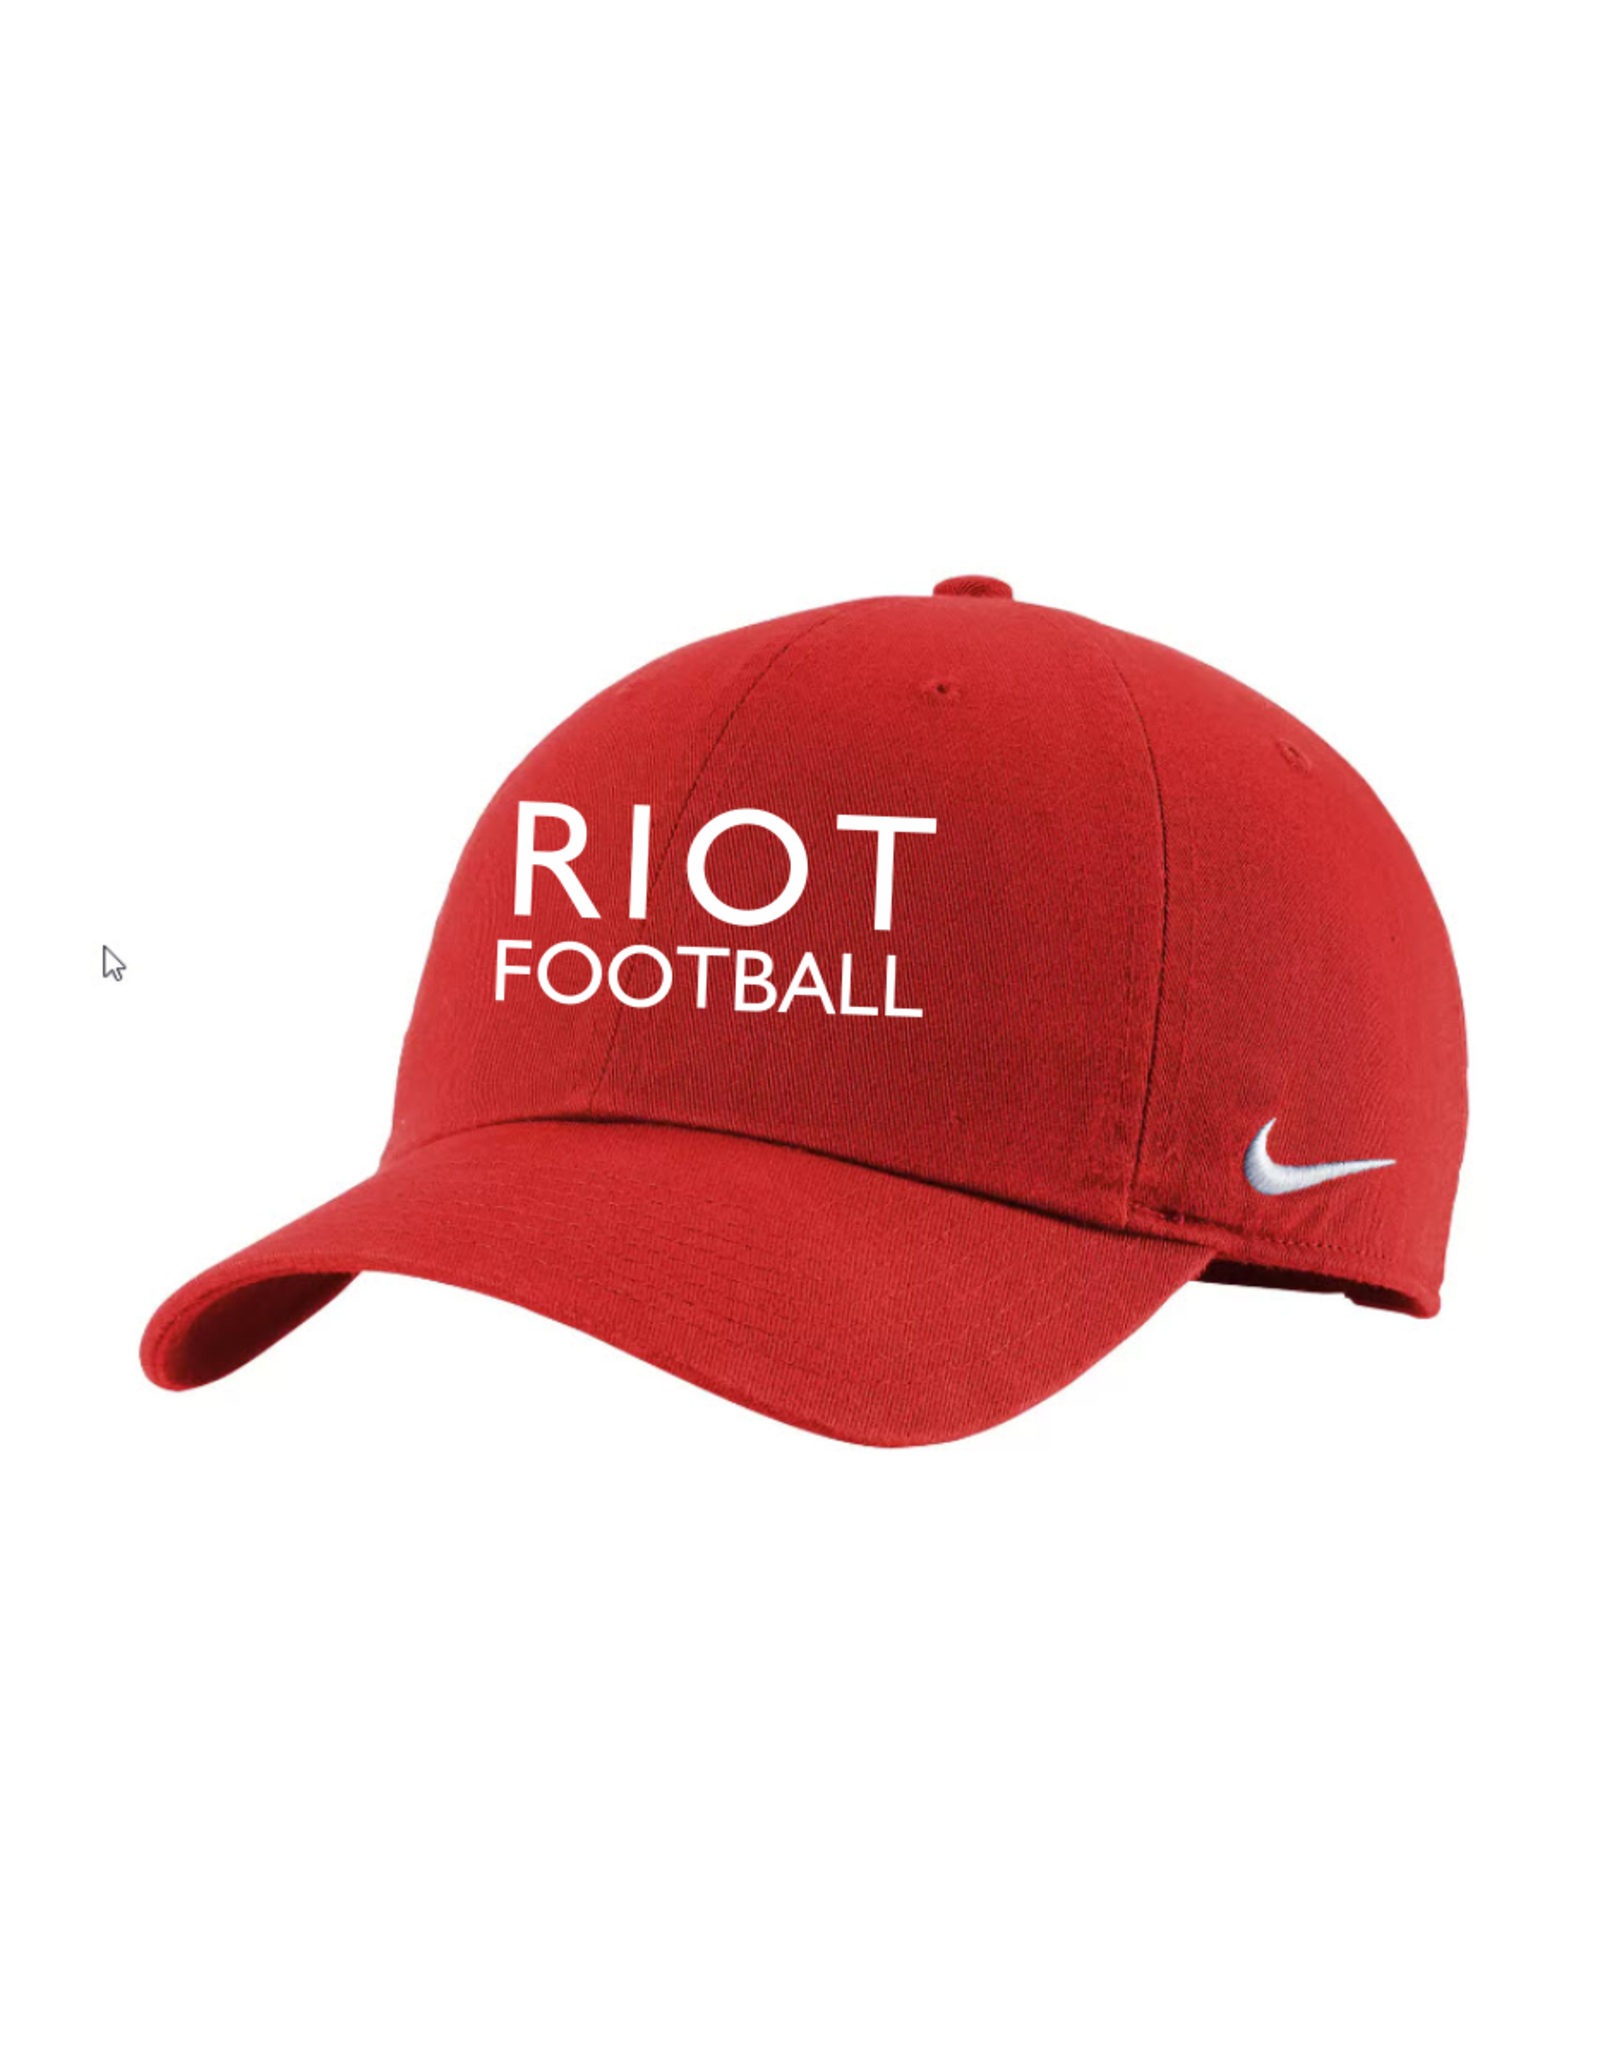 Riot Fan Nike Hat